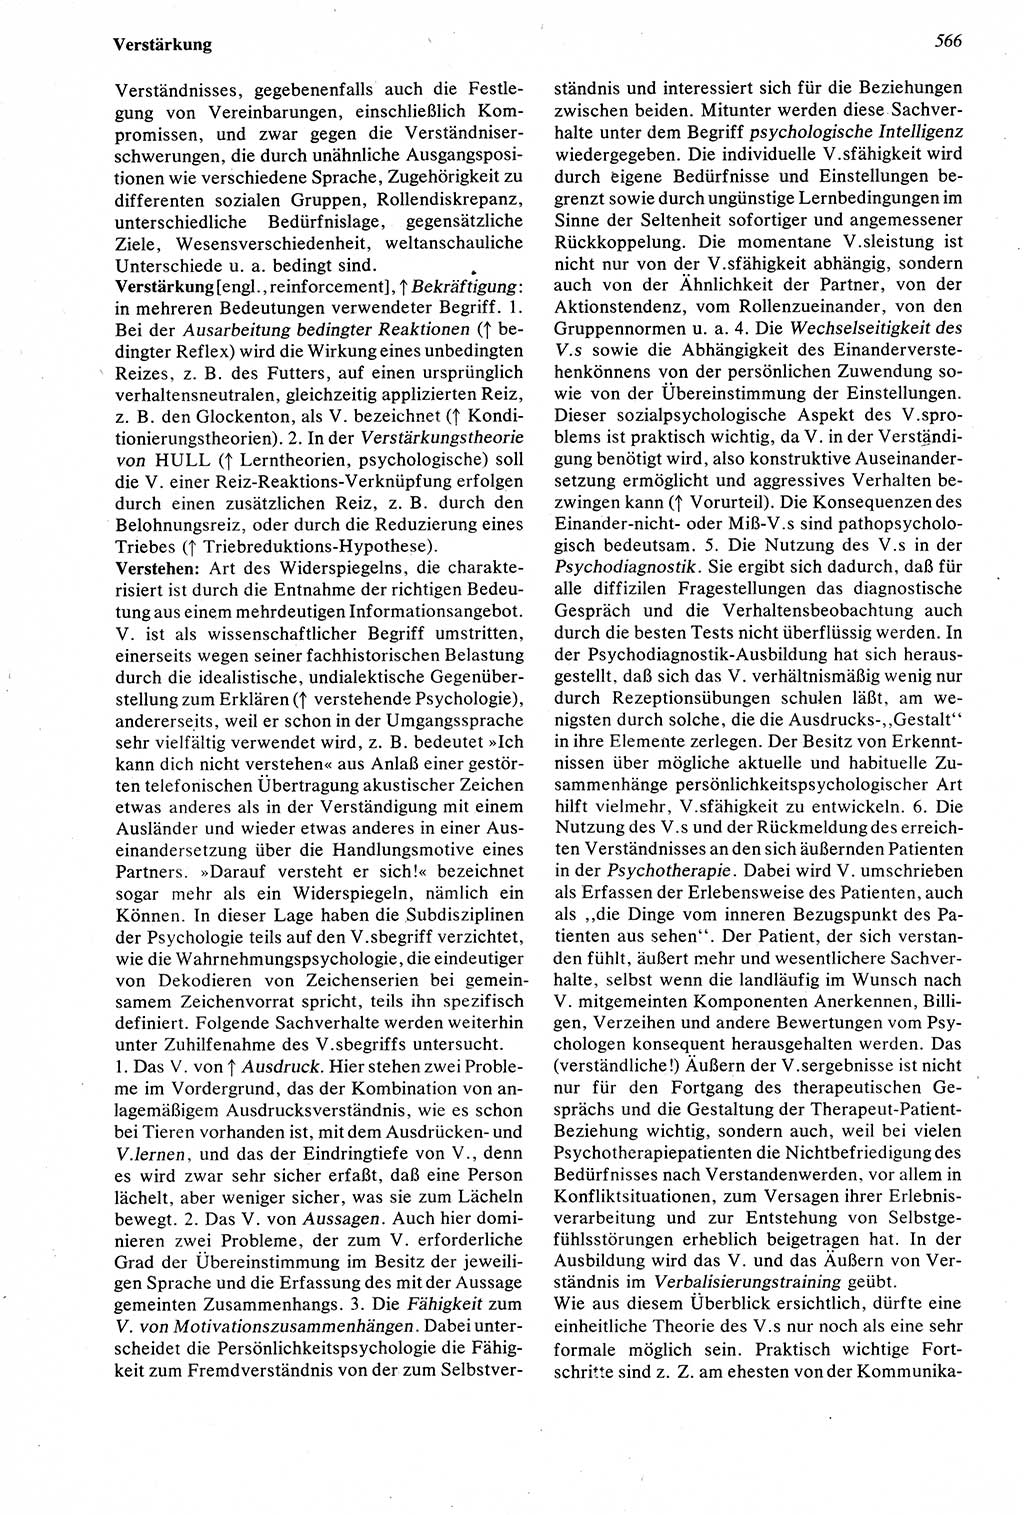 Wörterbuch der Psychologie [Deutsche Demokratische Republik (DDR)] 1976, Seite 566 (Wb. Psych. DDR 1976, S. 566)